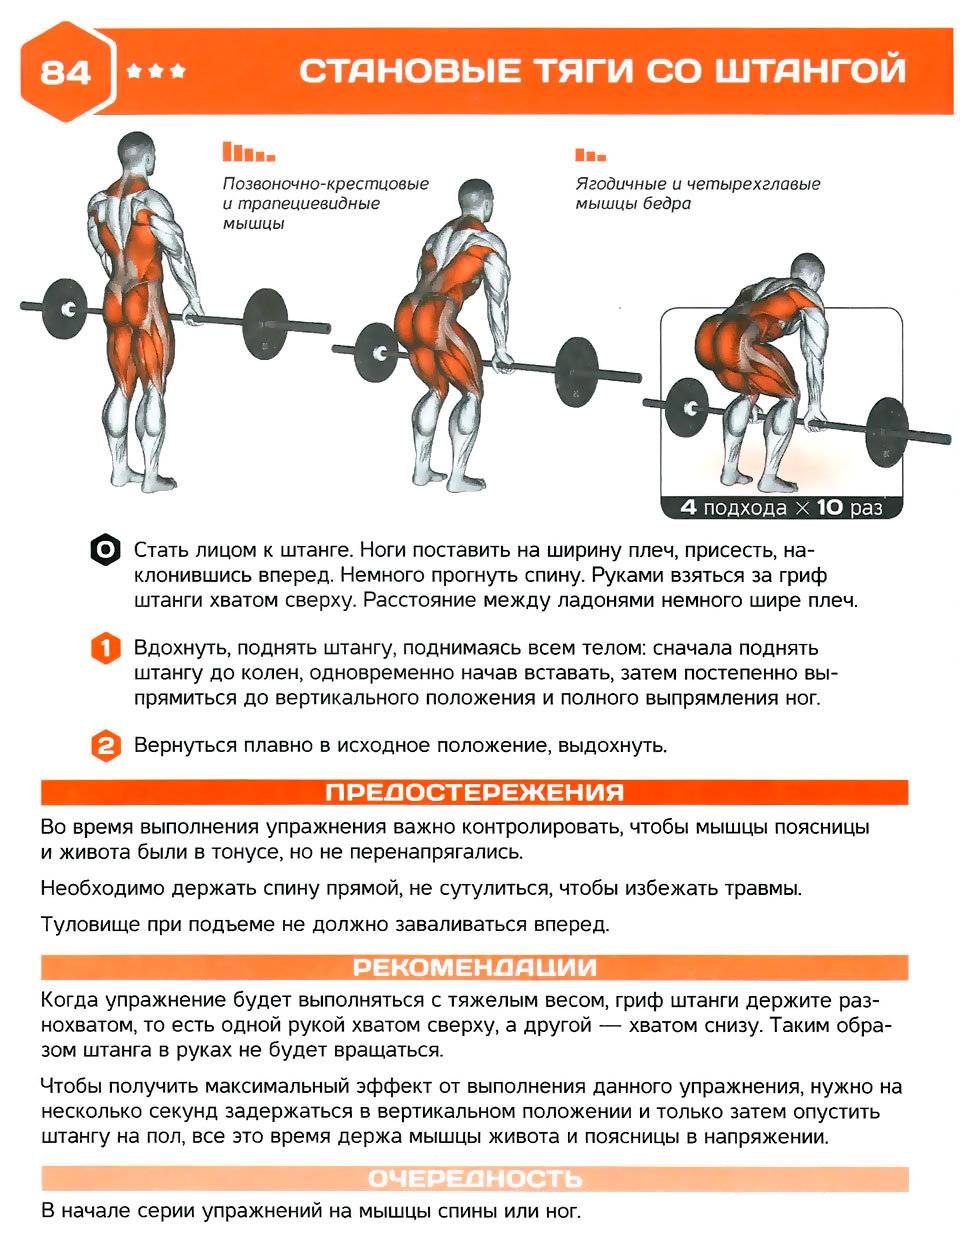 Становая тяга сумо: техника выполнения, какие мышцы работают